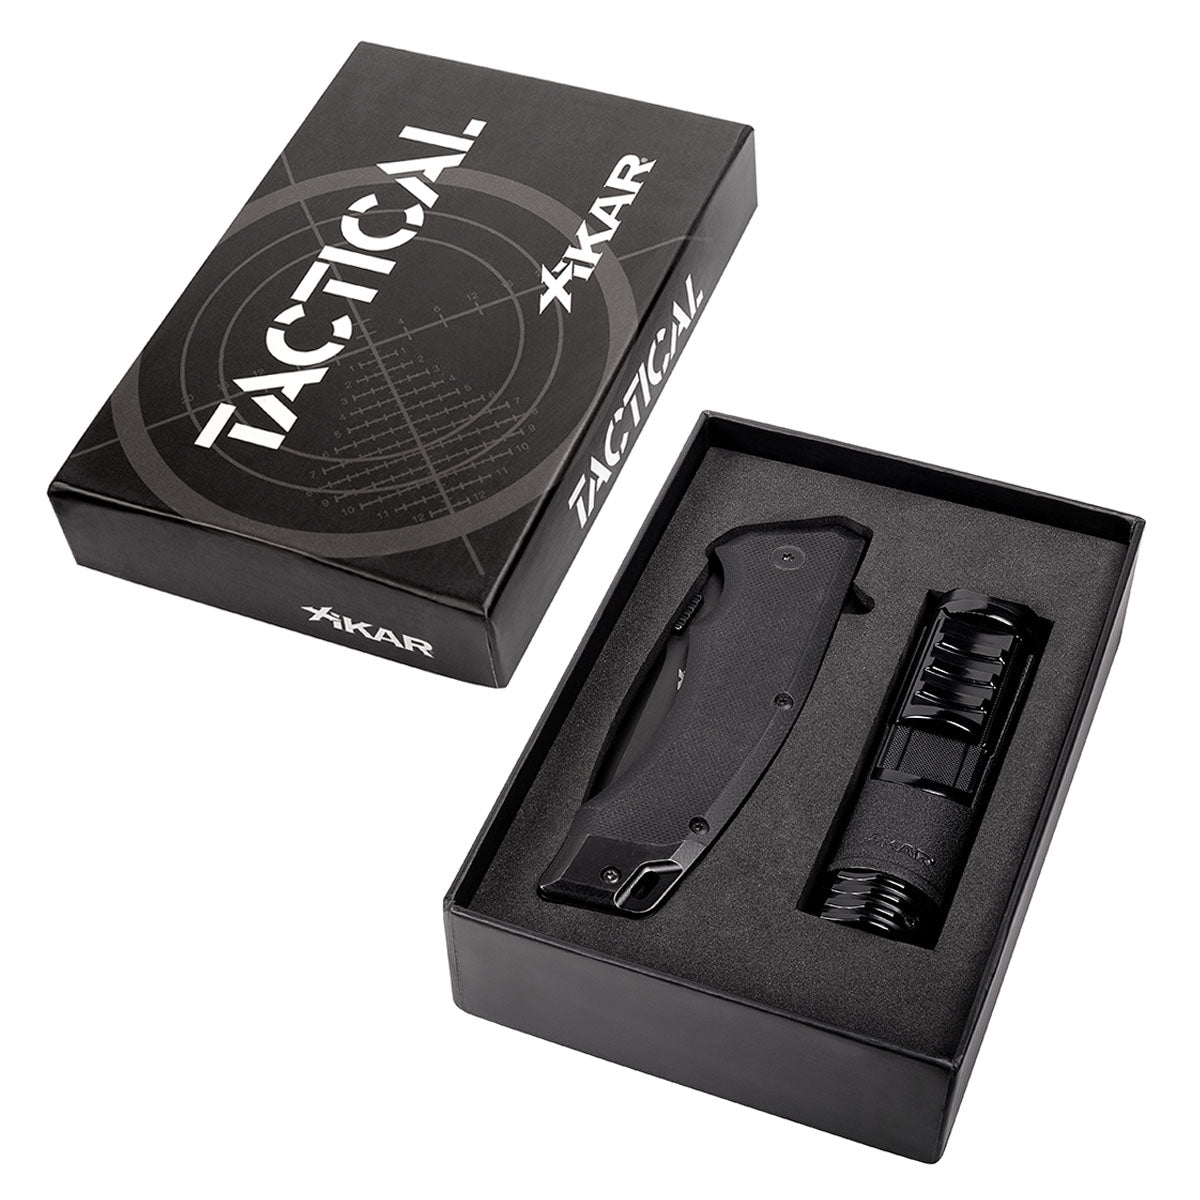 Tactical Knife & Lighter Gift Set